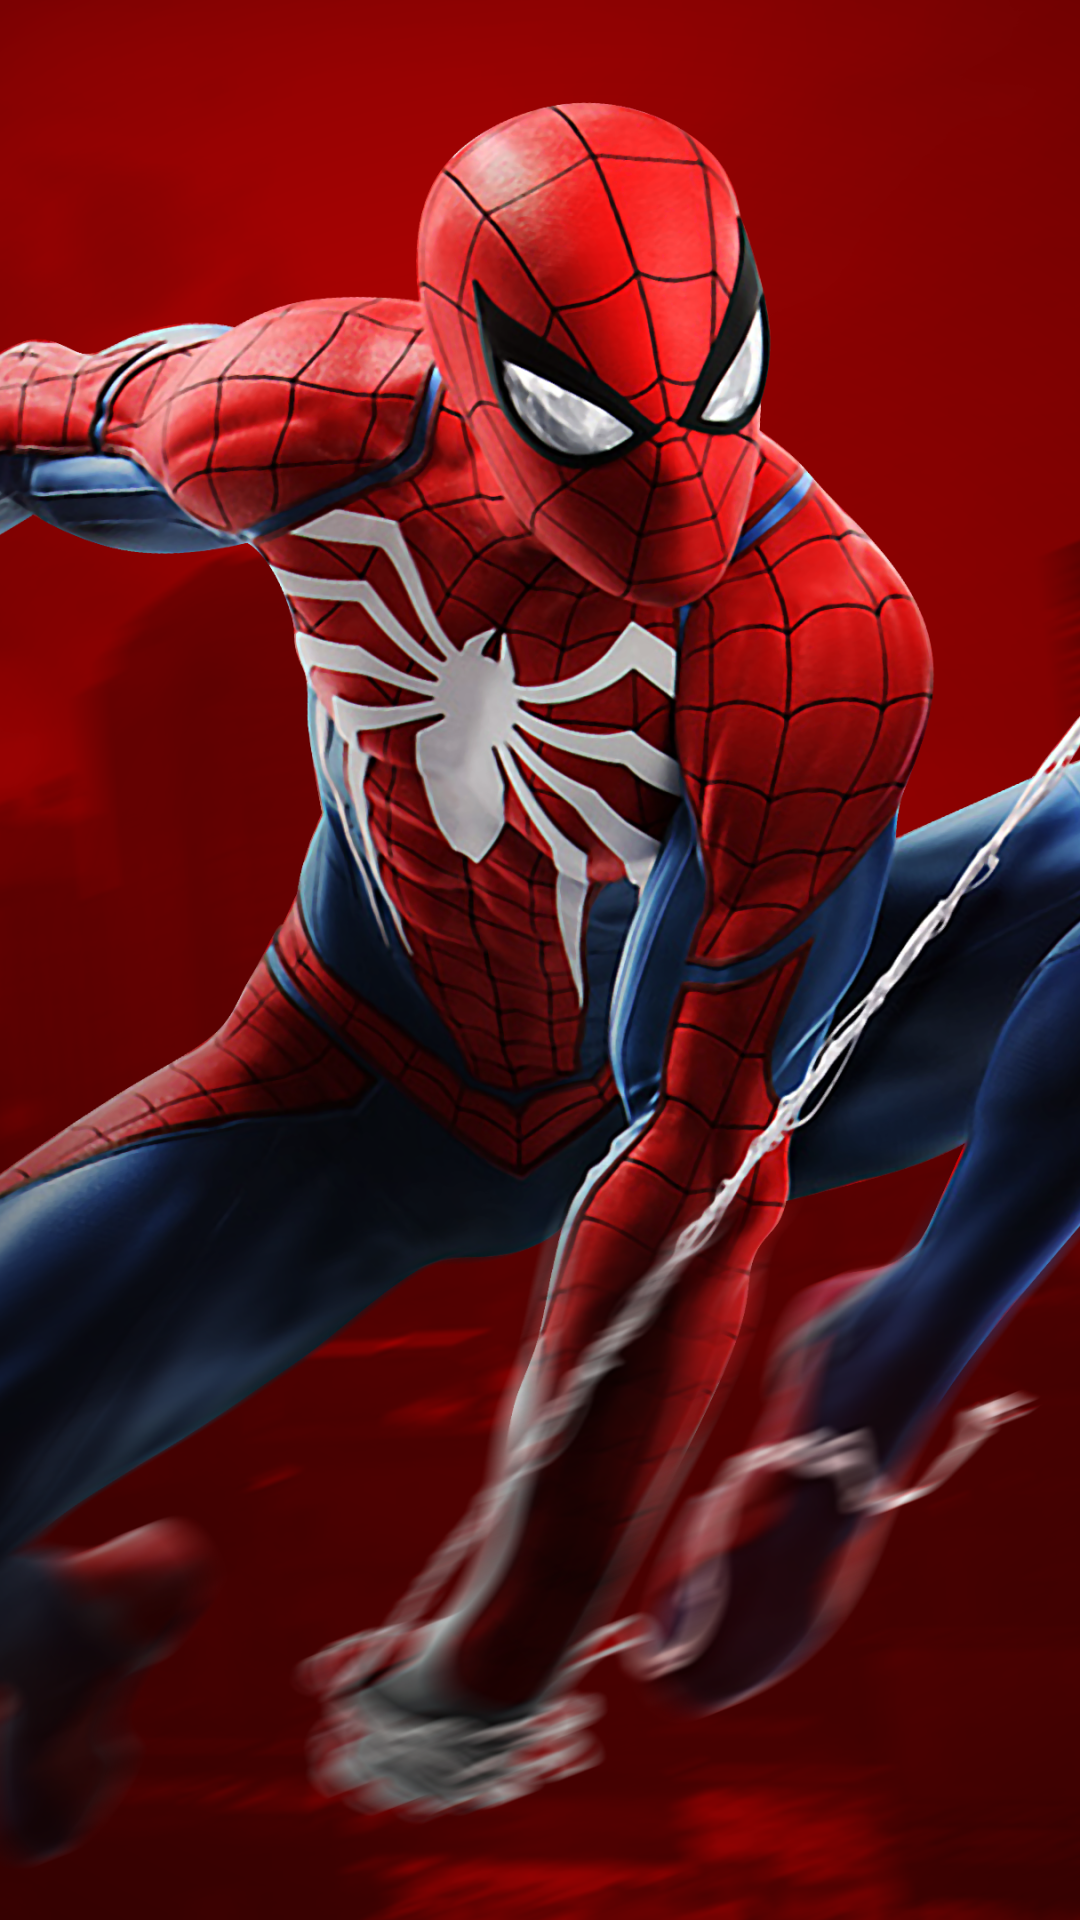 Spiderman Wallpaper 4k For Mobile 1080x19 Wallpaper Teahub Io